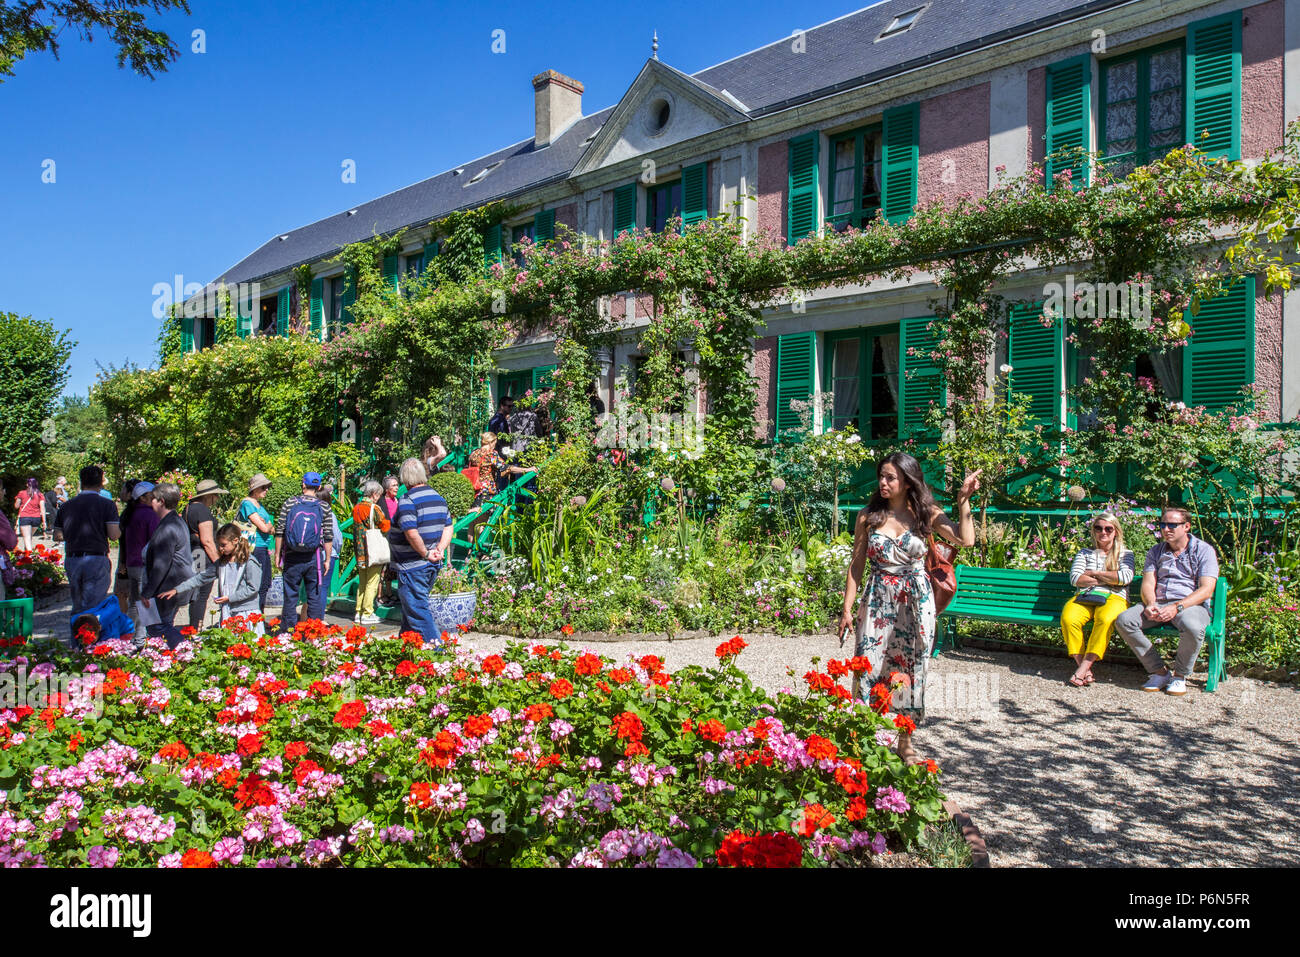 Les touristes visitant le jardin et maison en été de peintre impressionniste Claude Monet à Giverny, Eure, Normandie, France Banque D'Images